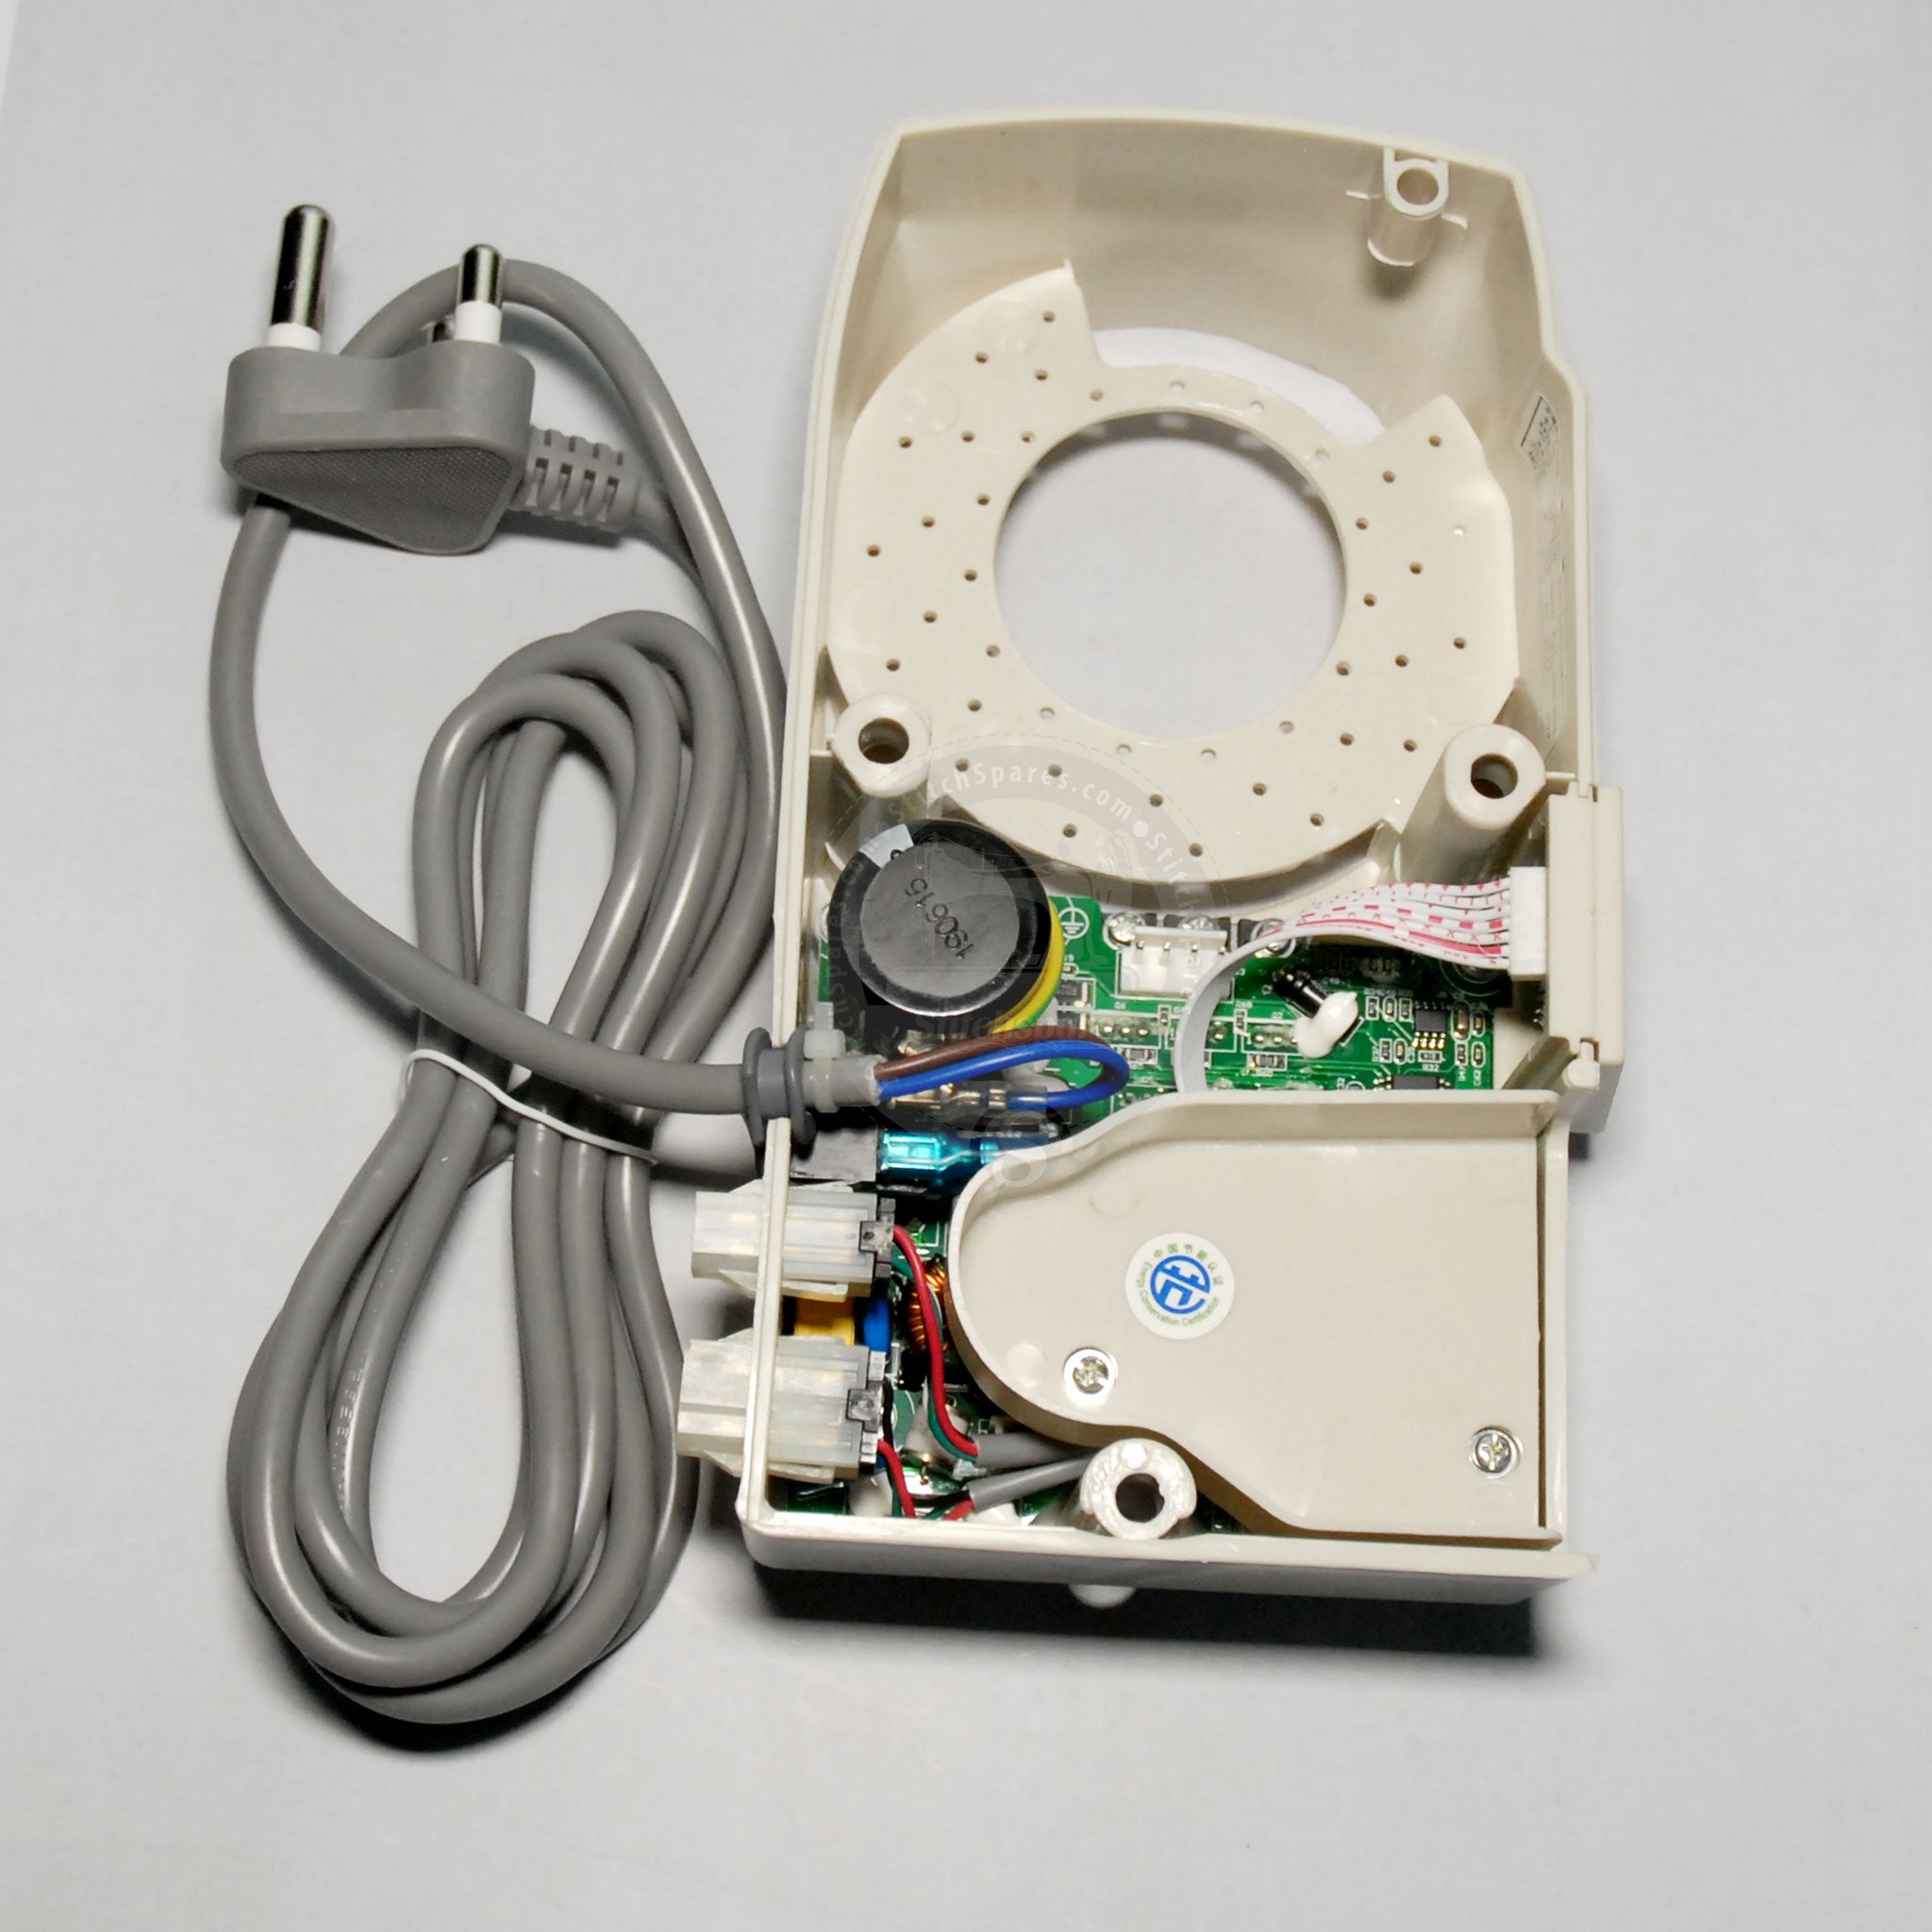 PWB 10133078 con el sistema completo de la caja de control Jack Jk-9100BS, pieza de repuesto de la máquina de coser Jk-9100BP